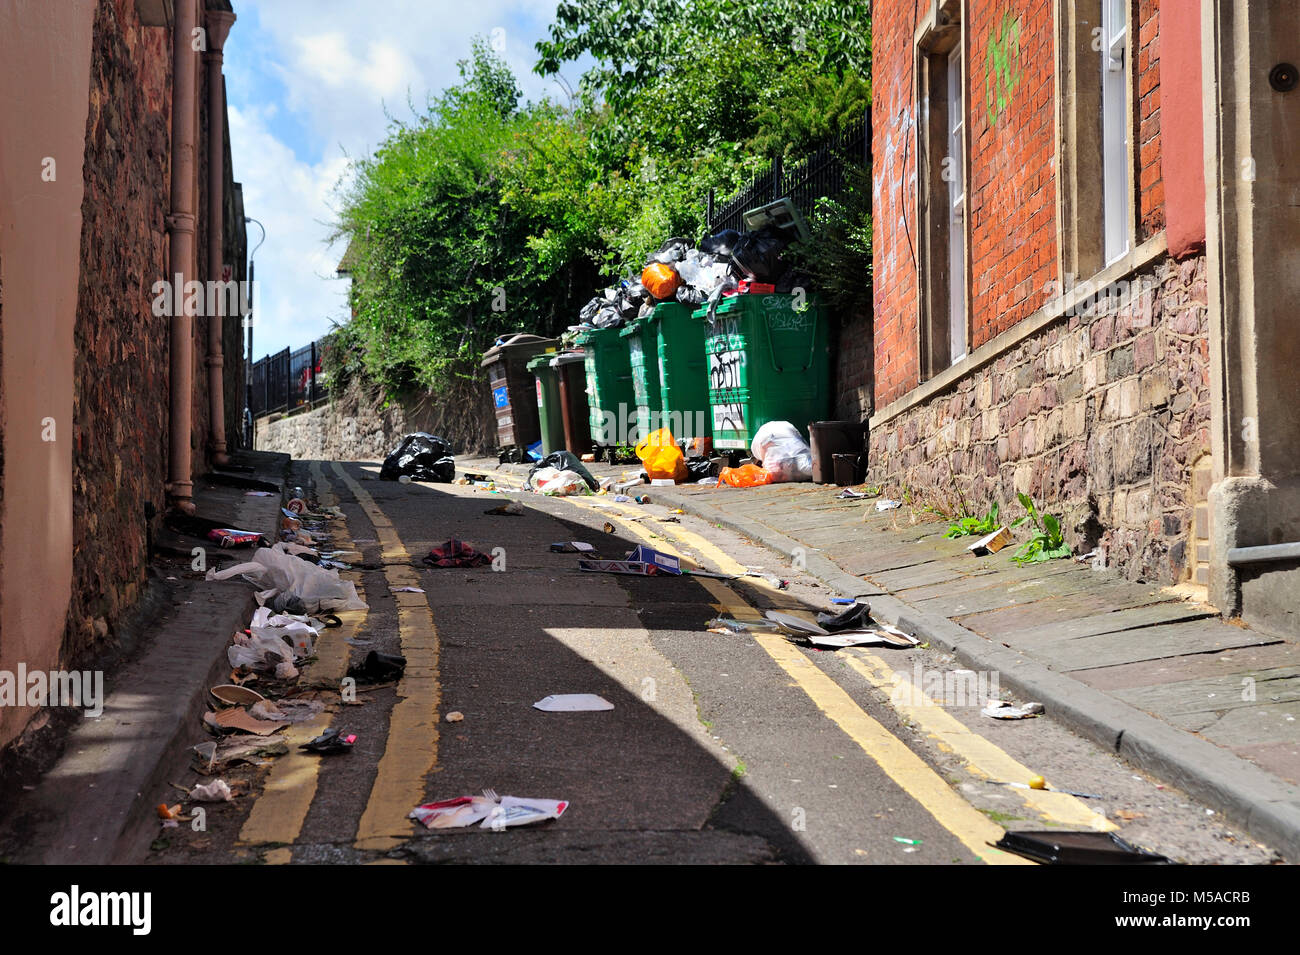 Ordures et déchets ordures petite allée avec des bacs de déchets qui débordent, UK Banque D'Images